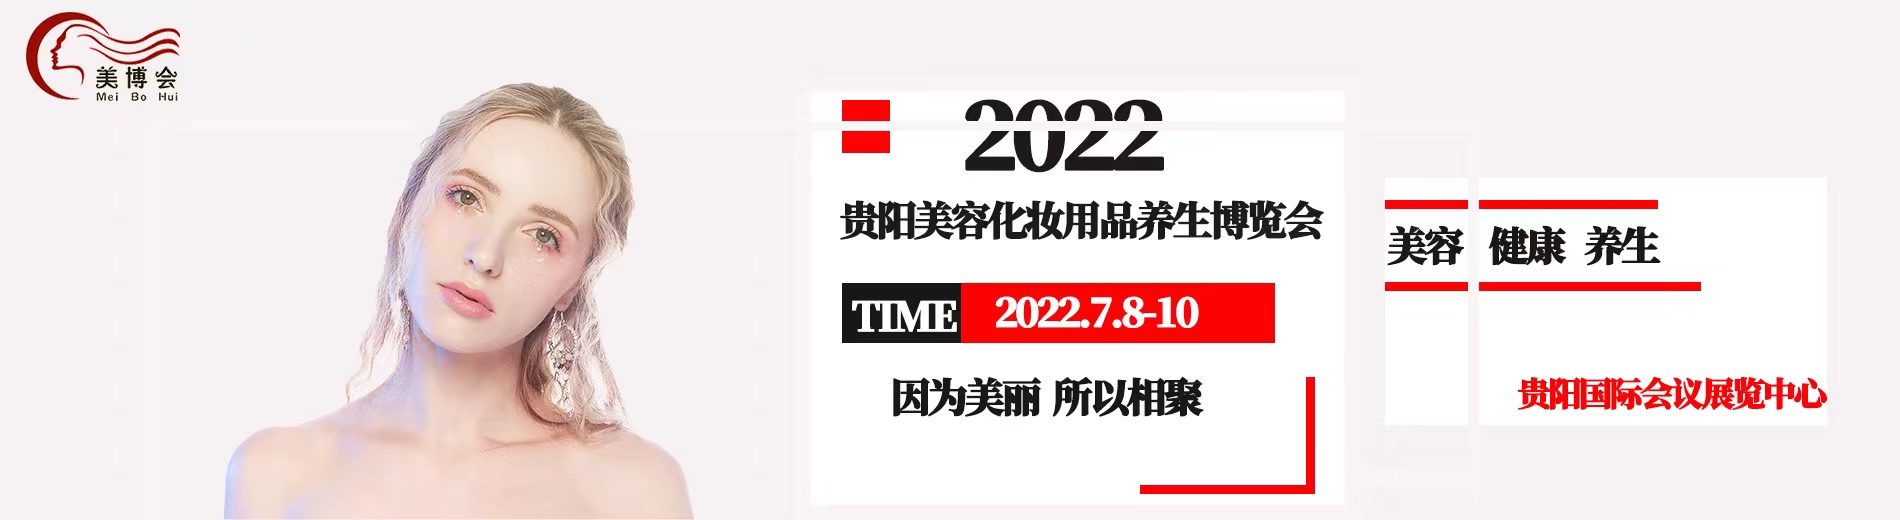 2022年贵阳美博会3.jpg